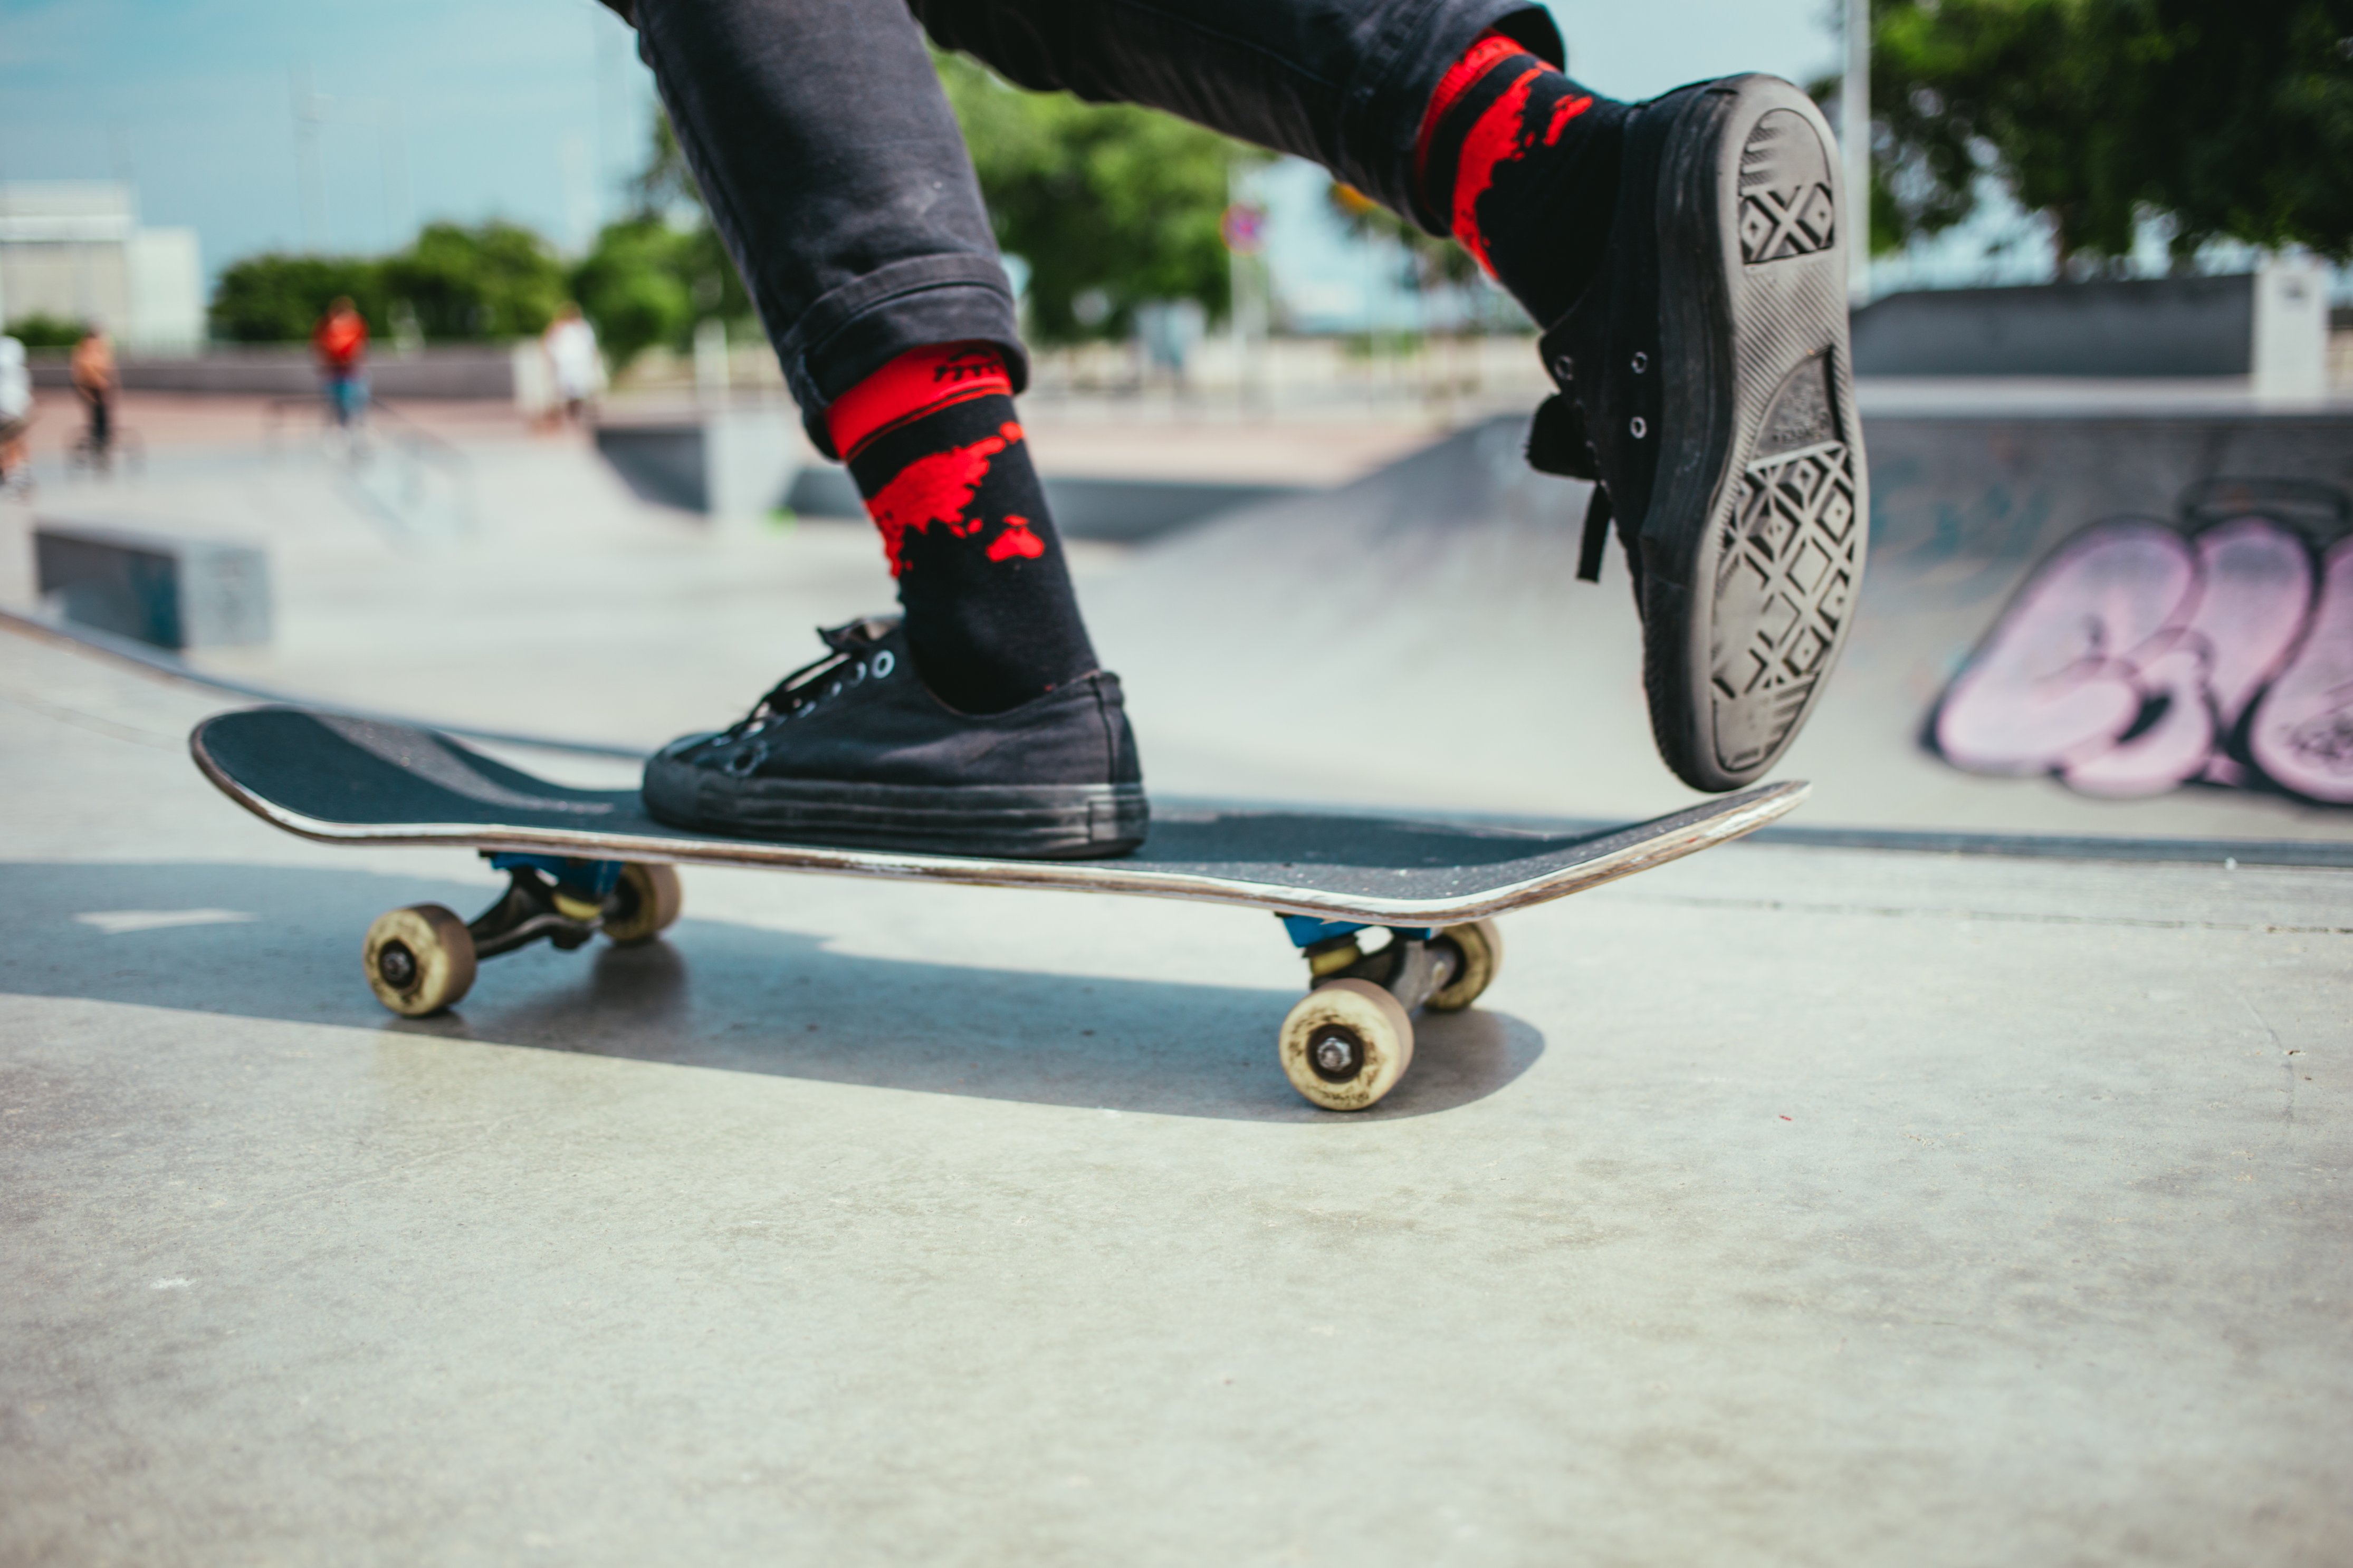 How to learn basic skateboarding tricks?